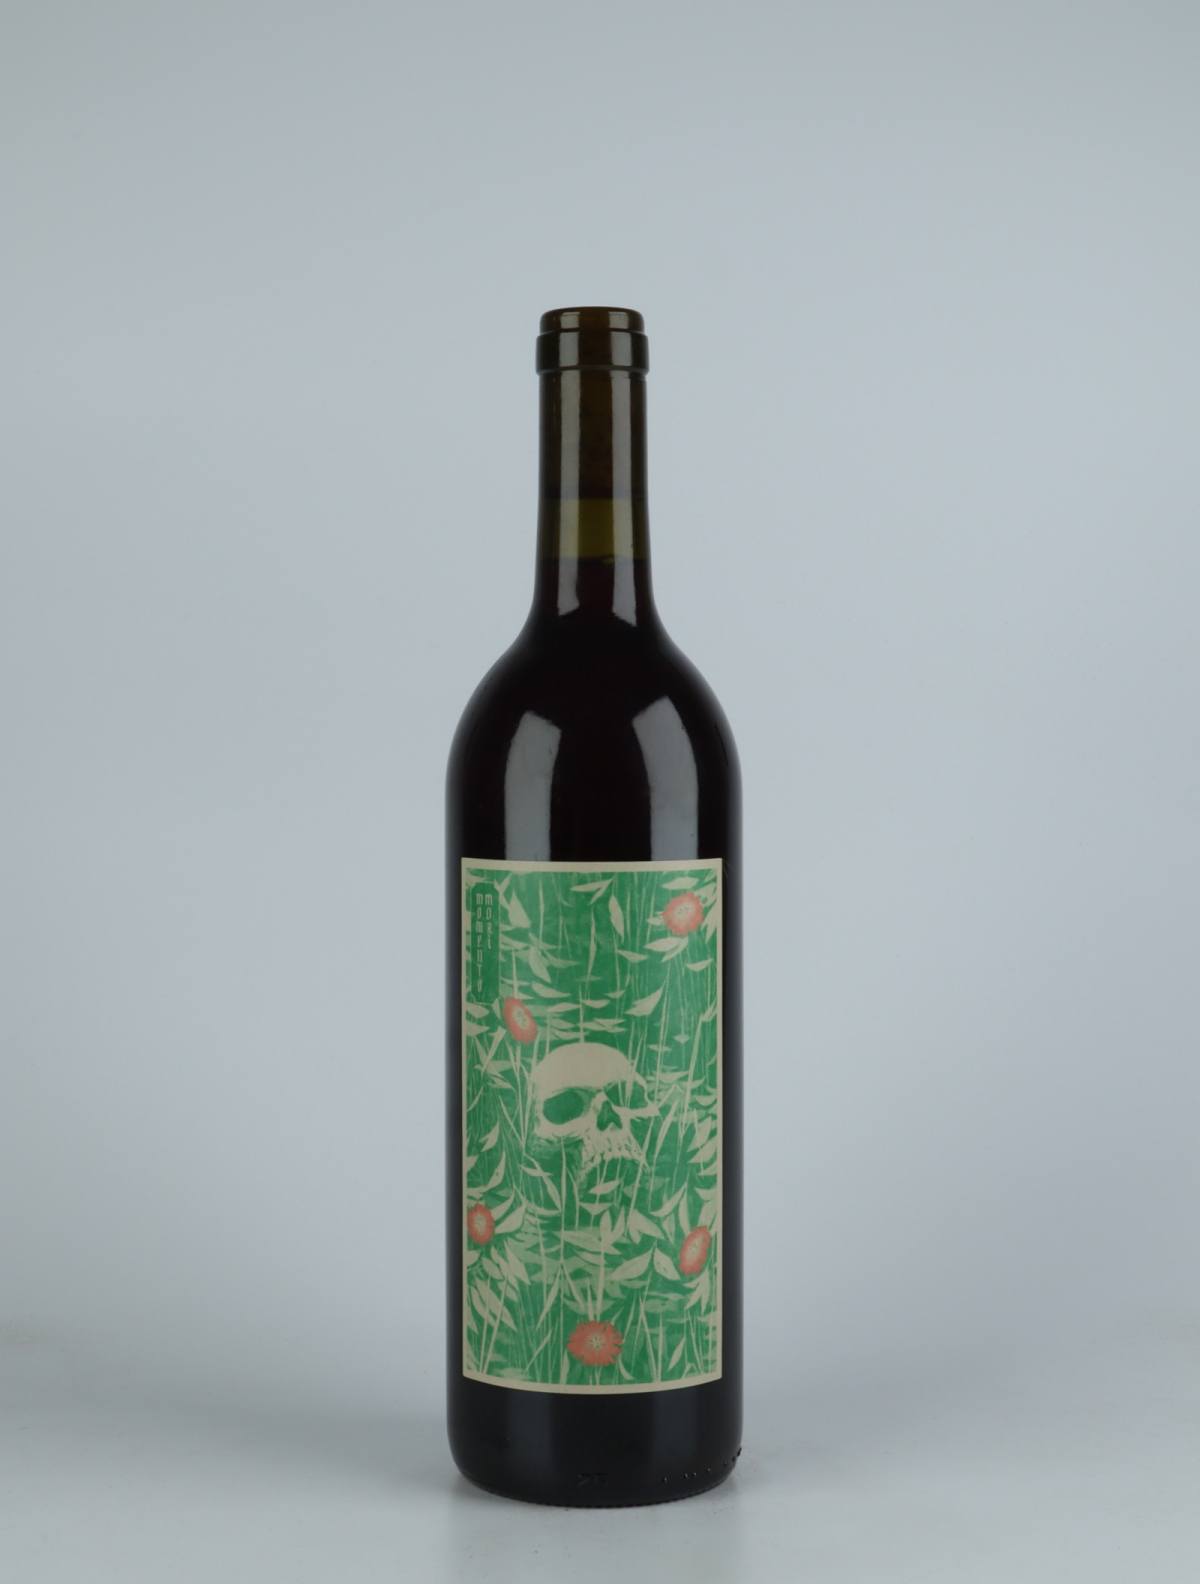 A bottle 2021 Rack & Ruin Red wine from Momento Mori, Victoria in Australia